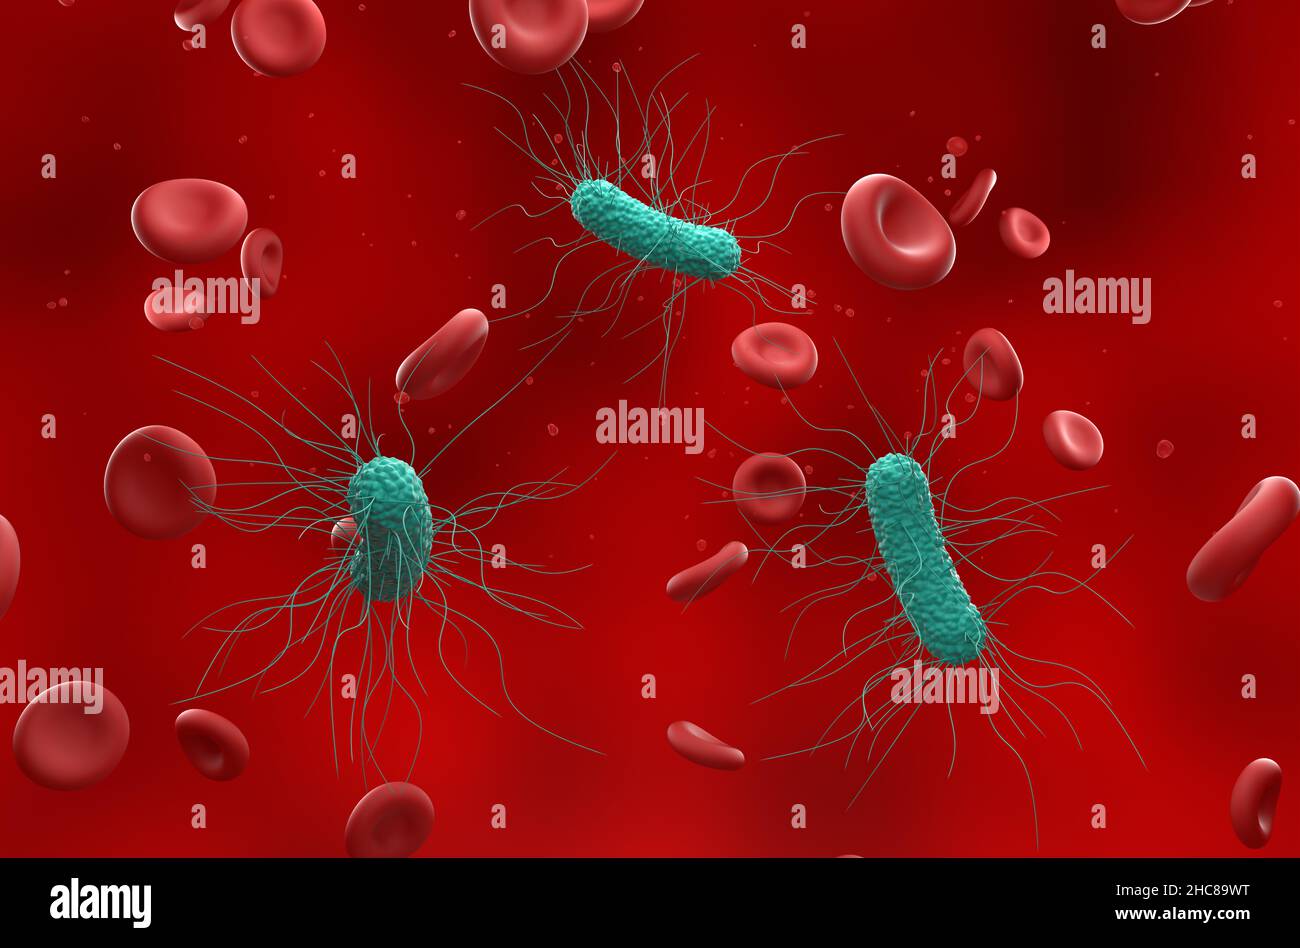 Allgemeine Bakterien im Blutfluss - isometrische Ansicht 3D Abbildung Stockfoto